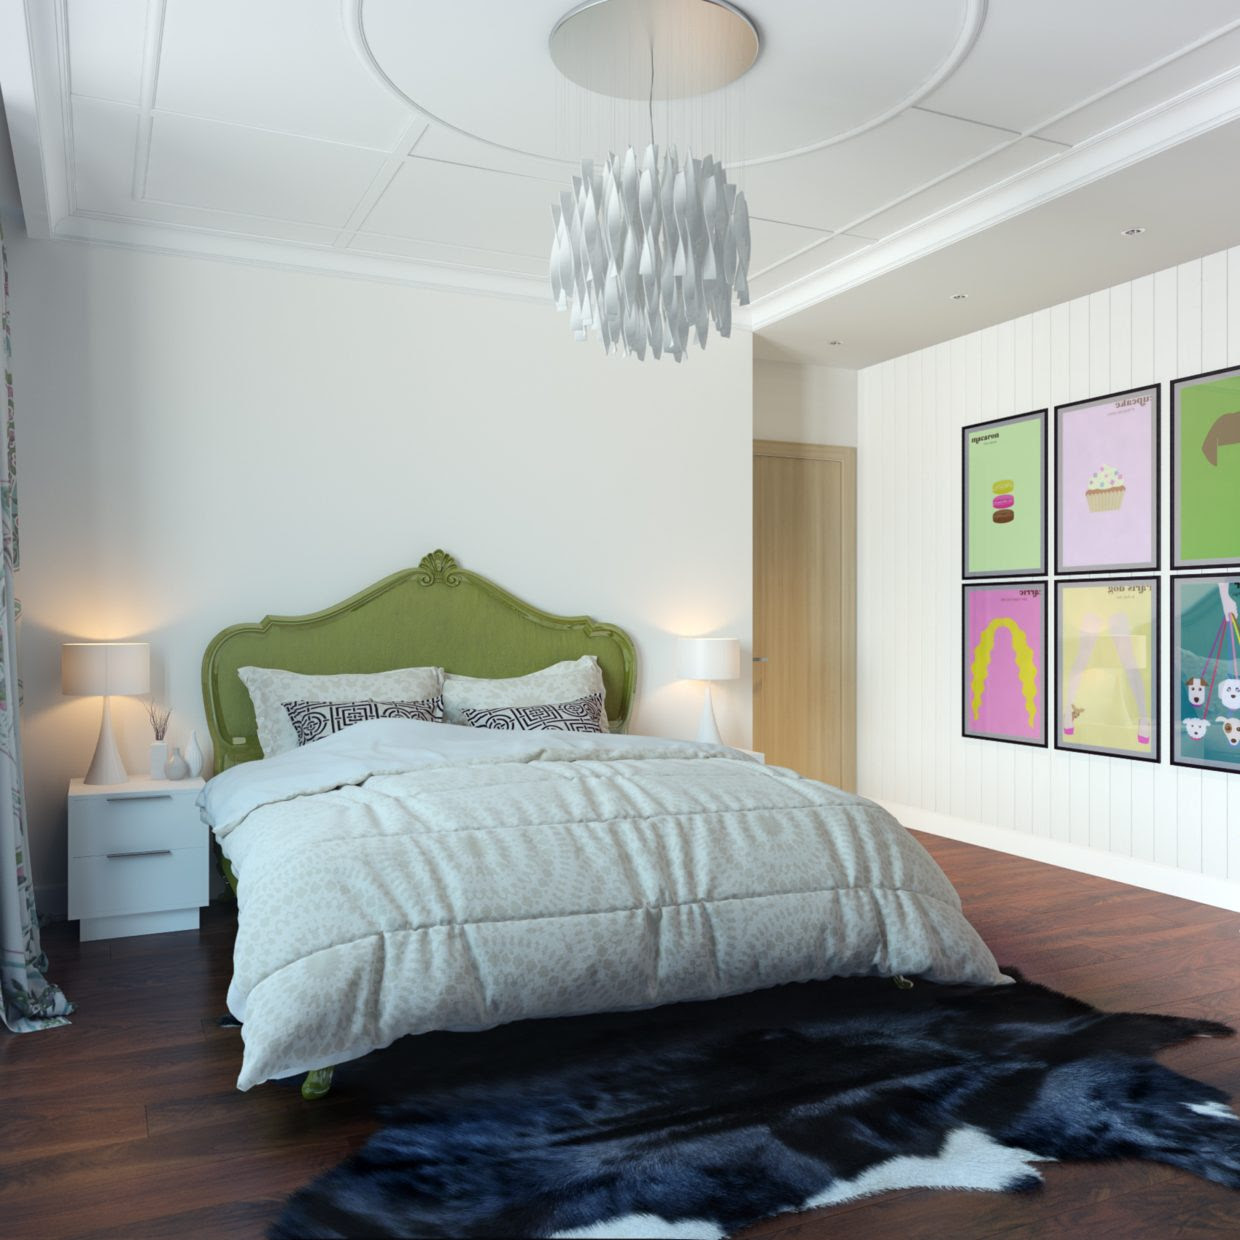 Home Architec Ideas Bedroom Pop Home Design Photos